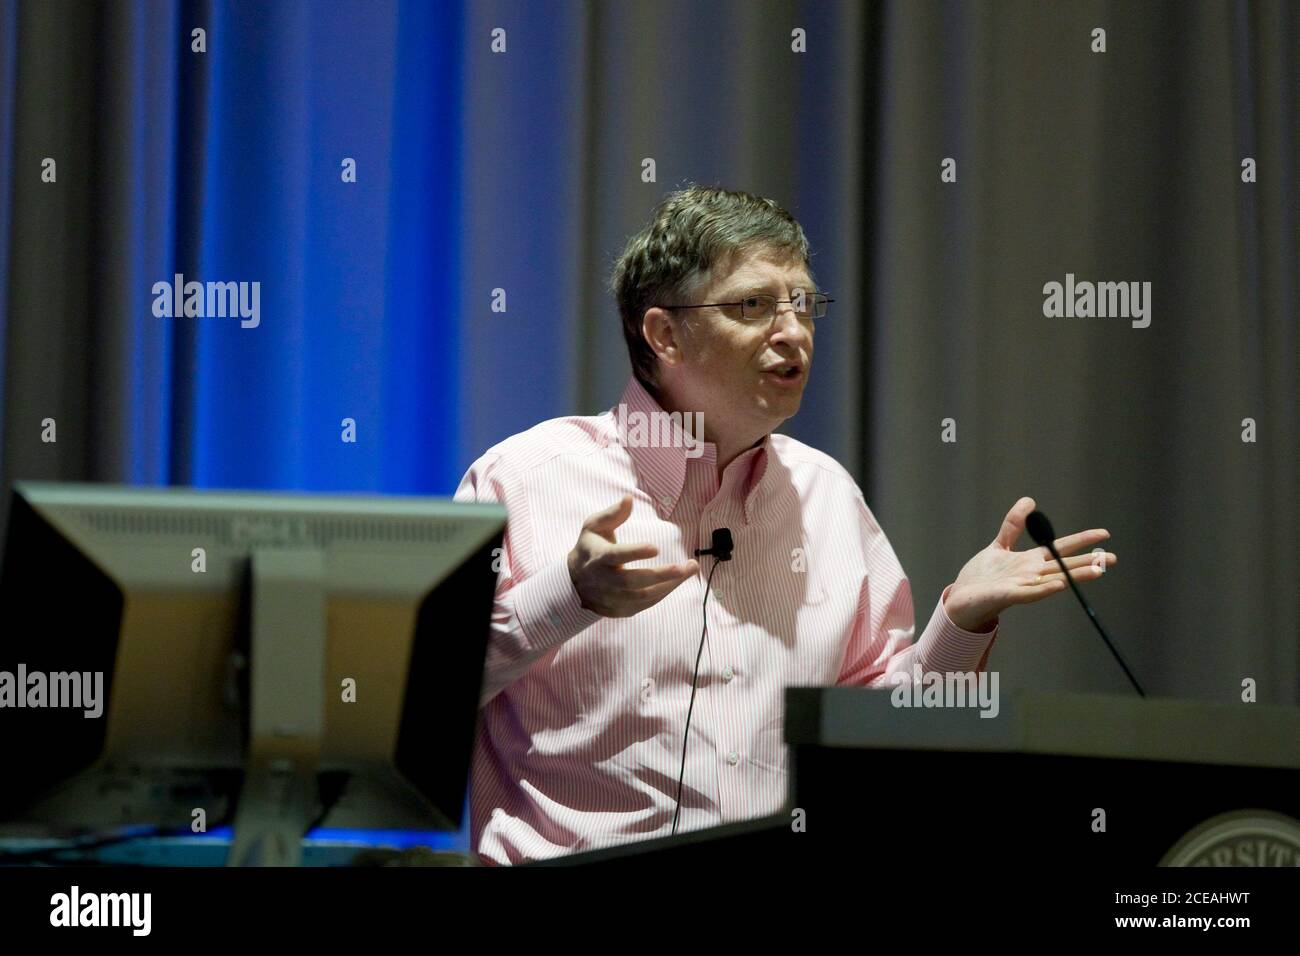 Austin, Texas, USA, 20. Februar 2008: Der Vorsitzende von Microsoft, Bill Gates, spricht während einer Rede an der University of Texas in Austin über die Zukunft des Computing und von Microsoft, wo er sich offiziell von seinen täglichen Pflichten zurückziehen wird. ©Bob Daemmrich Stockfoto